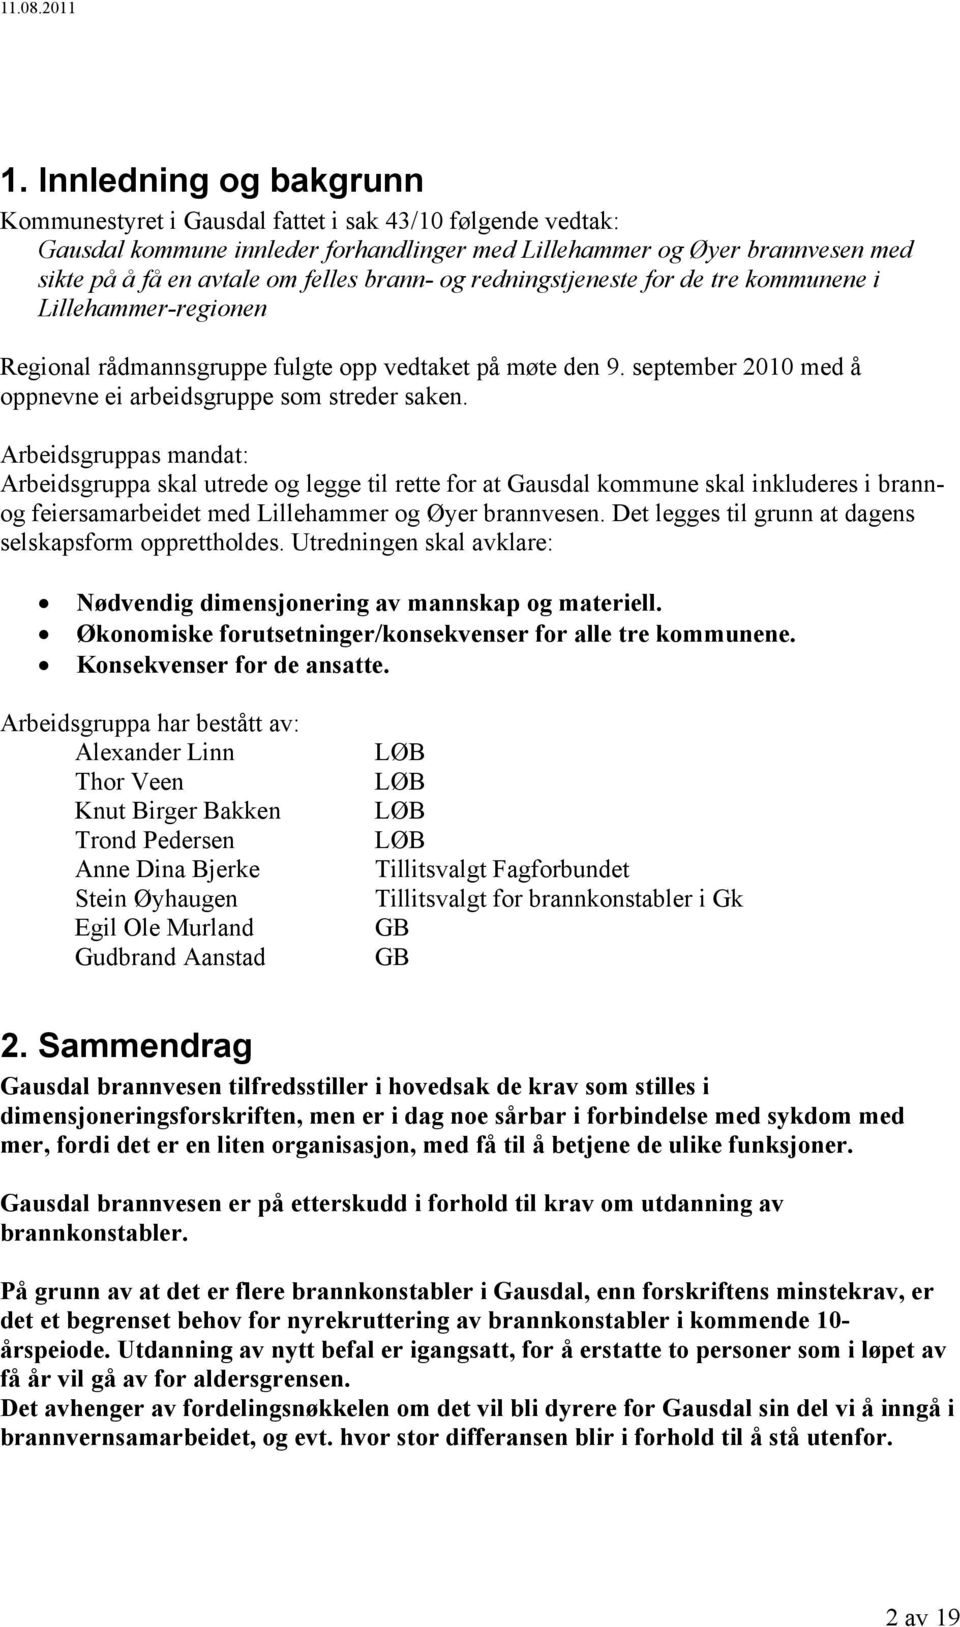 Arbeidsgruppas mandat: Arbeidsgruppa skal utrede og legge til rette for at Gausdal kommune skal inkluderes i brannog feiersamarbeidet med Lillehammer og Øyer brannvesen.